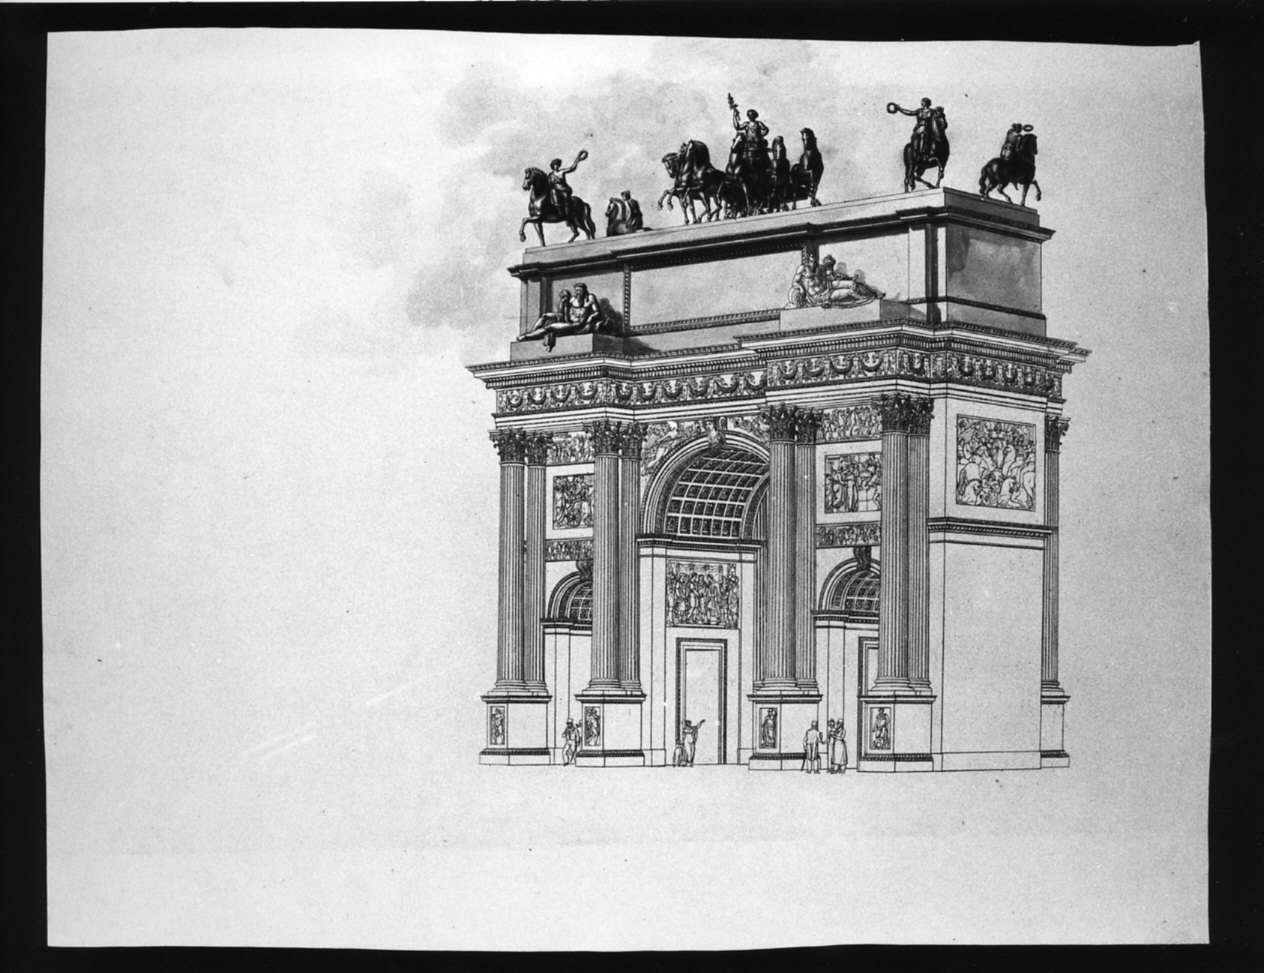 progetto architettonico: veduta prospettica dell'Arco della Pace (stampa) di Cagnola Luigi, Albertolli Ferdinando (sec. XIX)